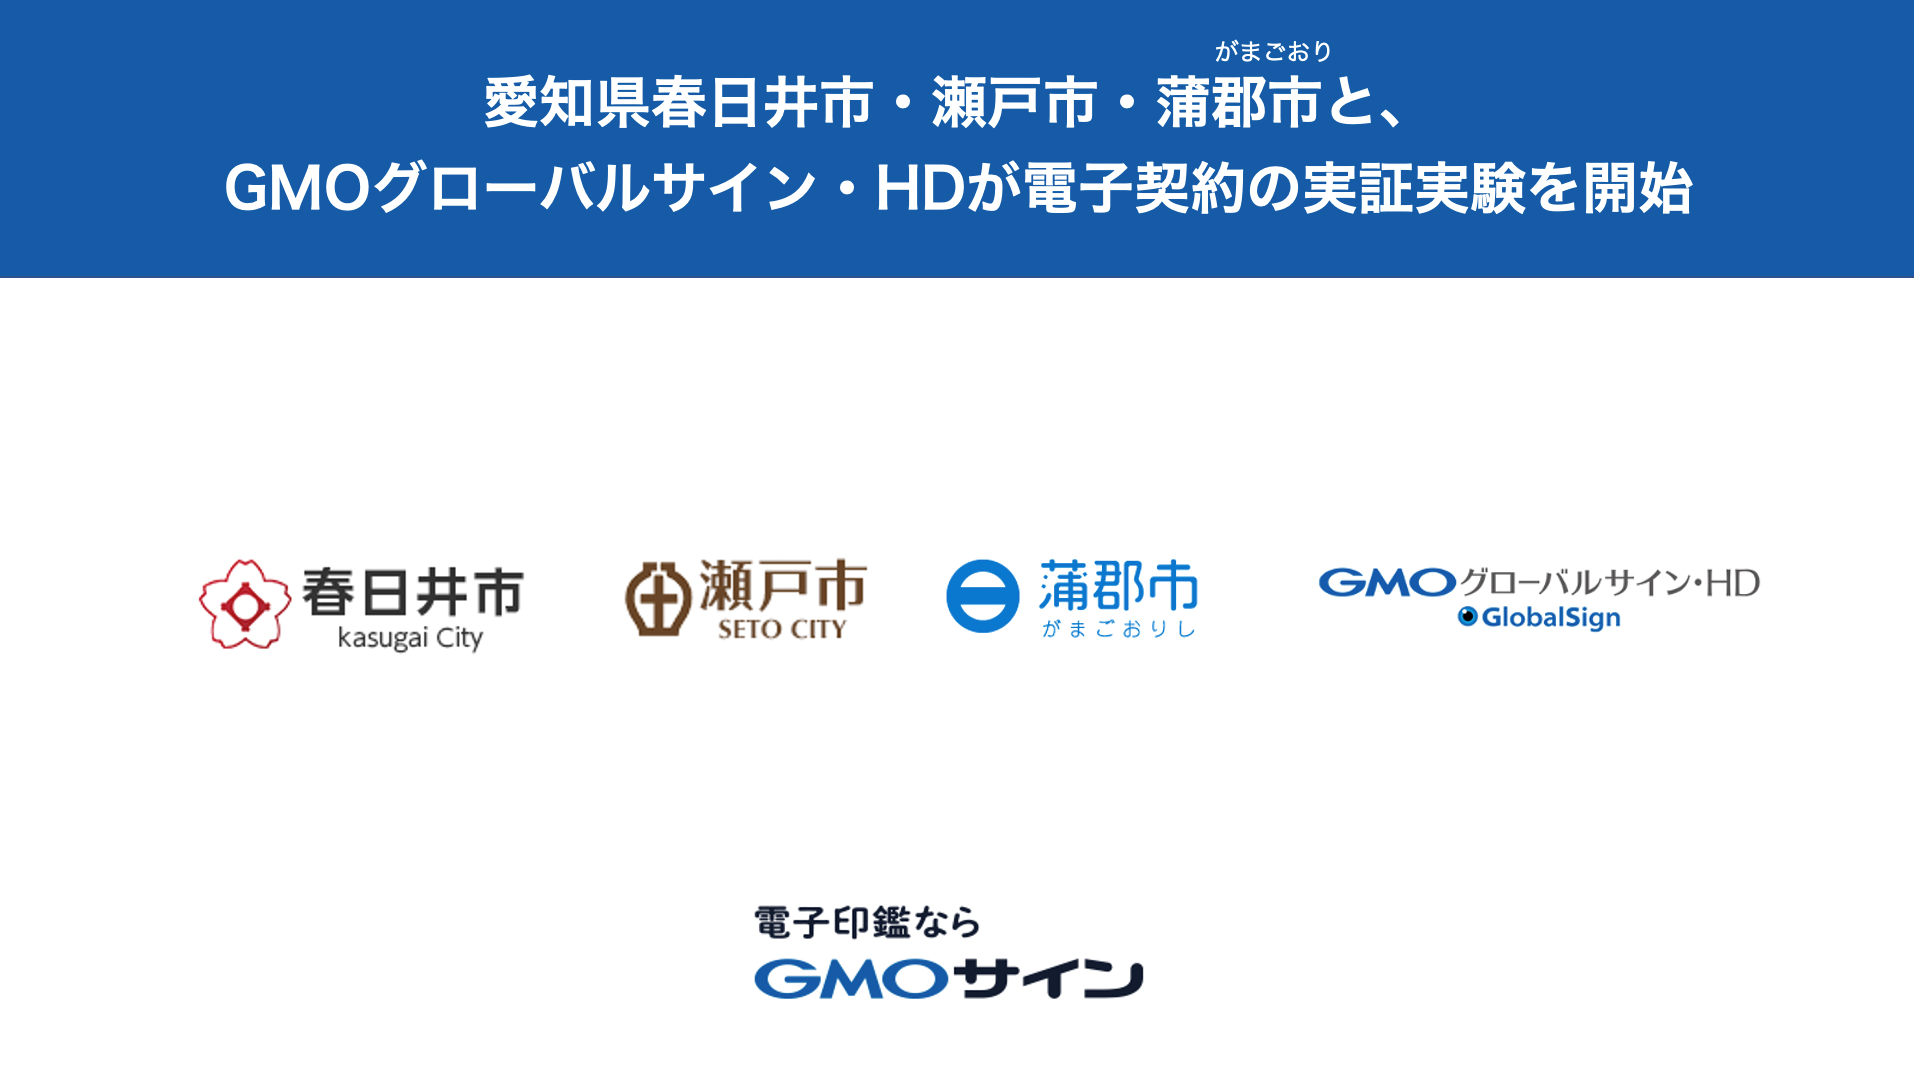 愛知県春日井市・瀬戸市・蒲郡市とGMOグローバルサイン・HDが脱ハンコに向けた電子契約の実証実験を開始 GMO